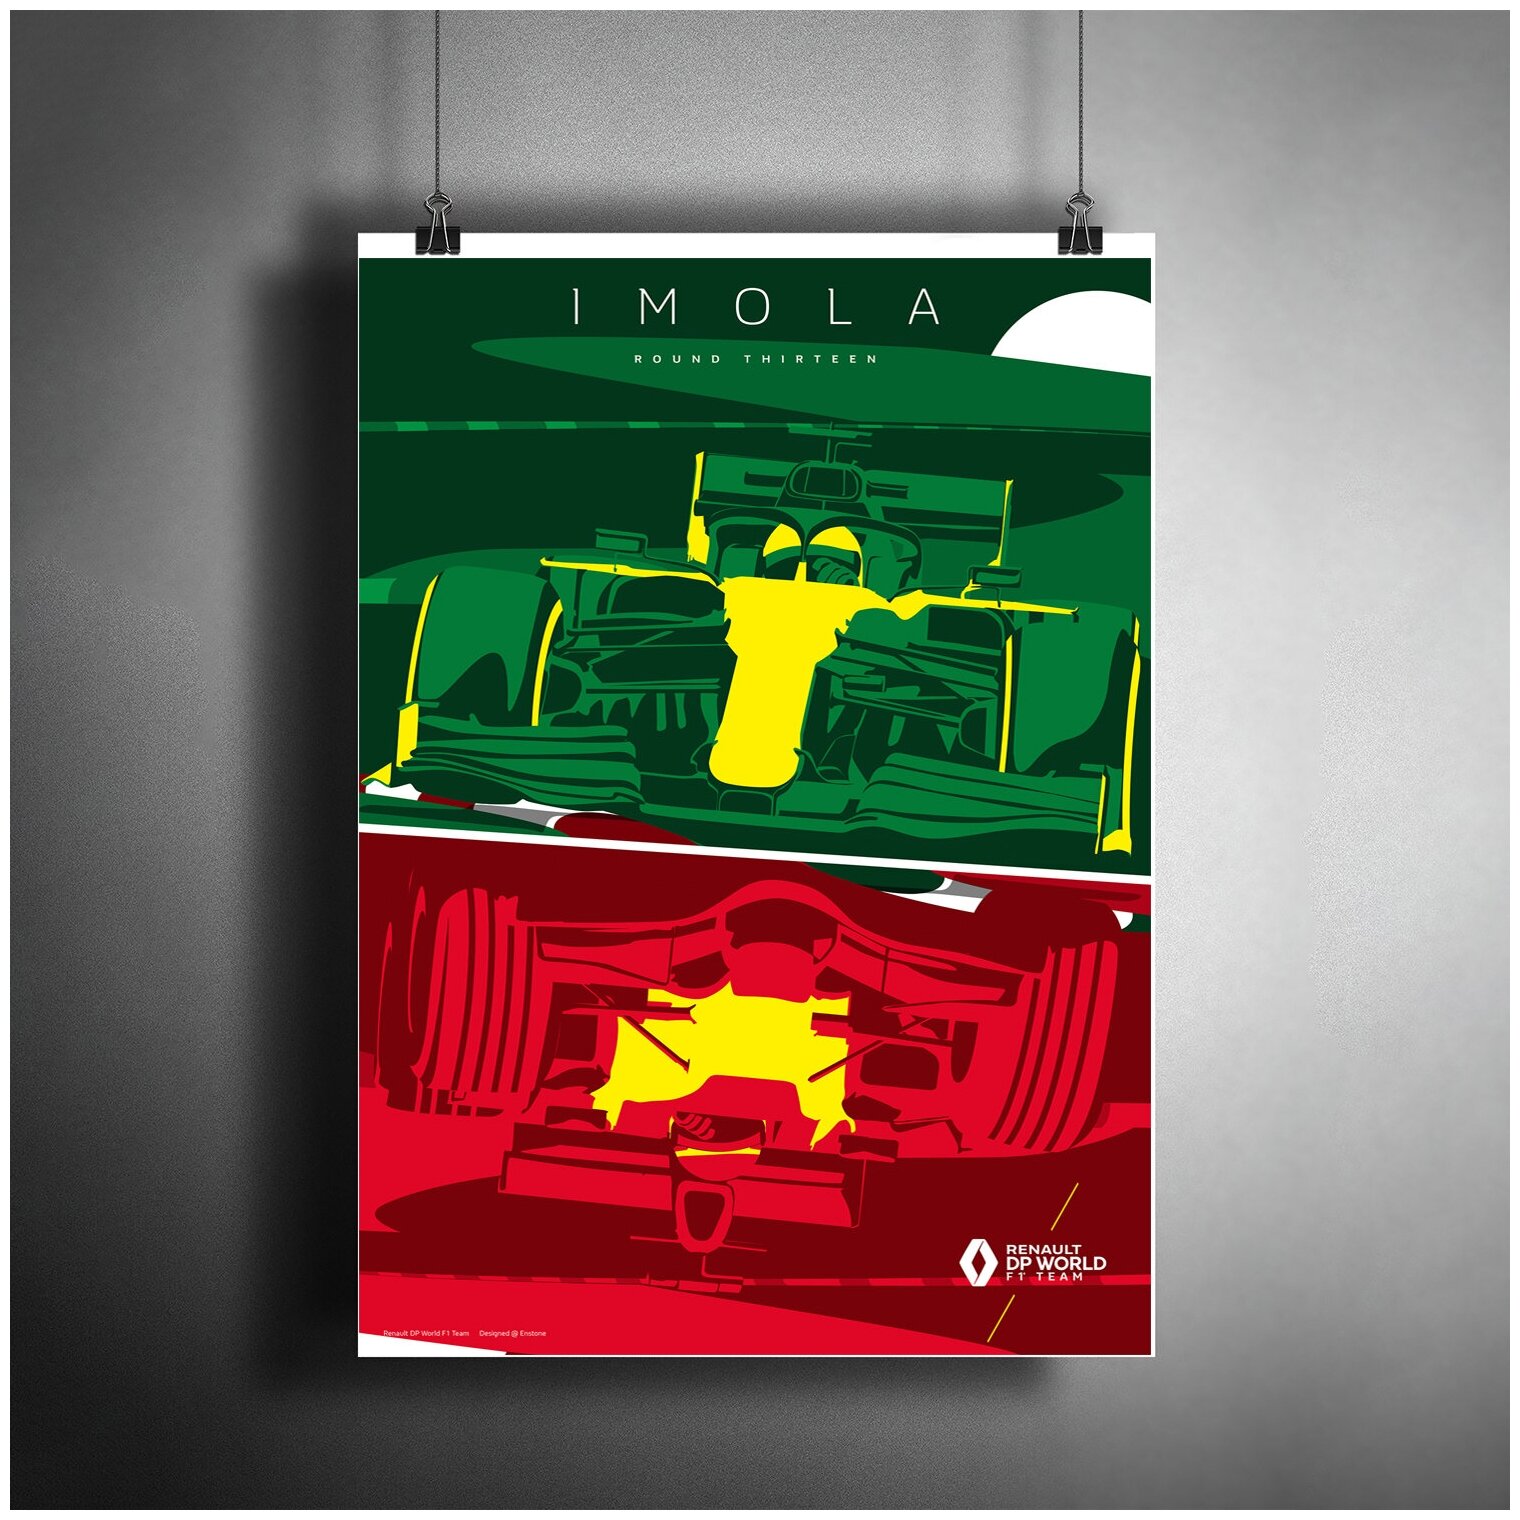 Постер плакат для интерьера "Гоночный чемпионат: Еврокубок Формулы-Рено, Имола, Италия"/ Декор дома, офиса, комнаты A3 (297 x 420 мм)